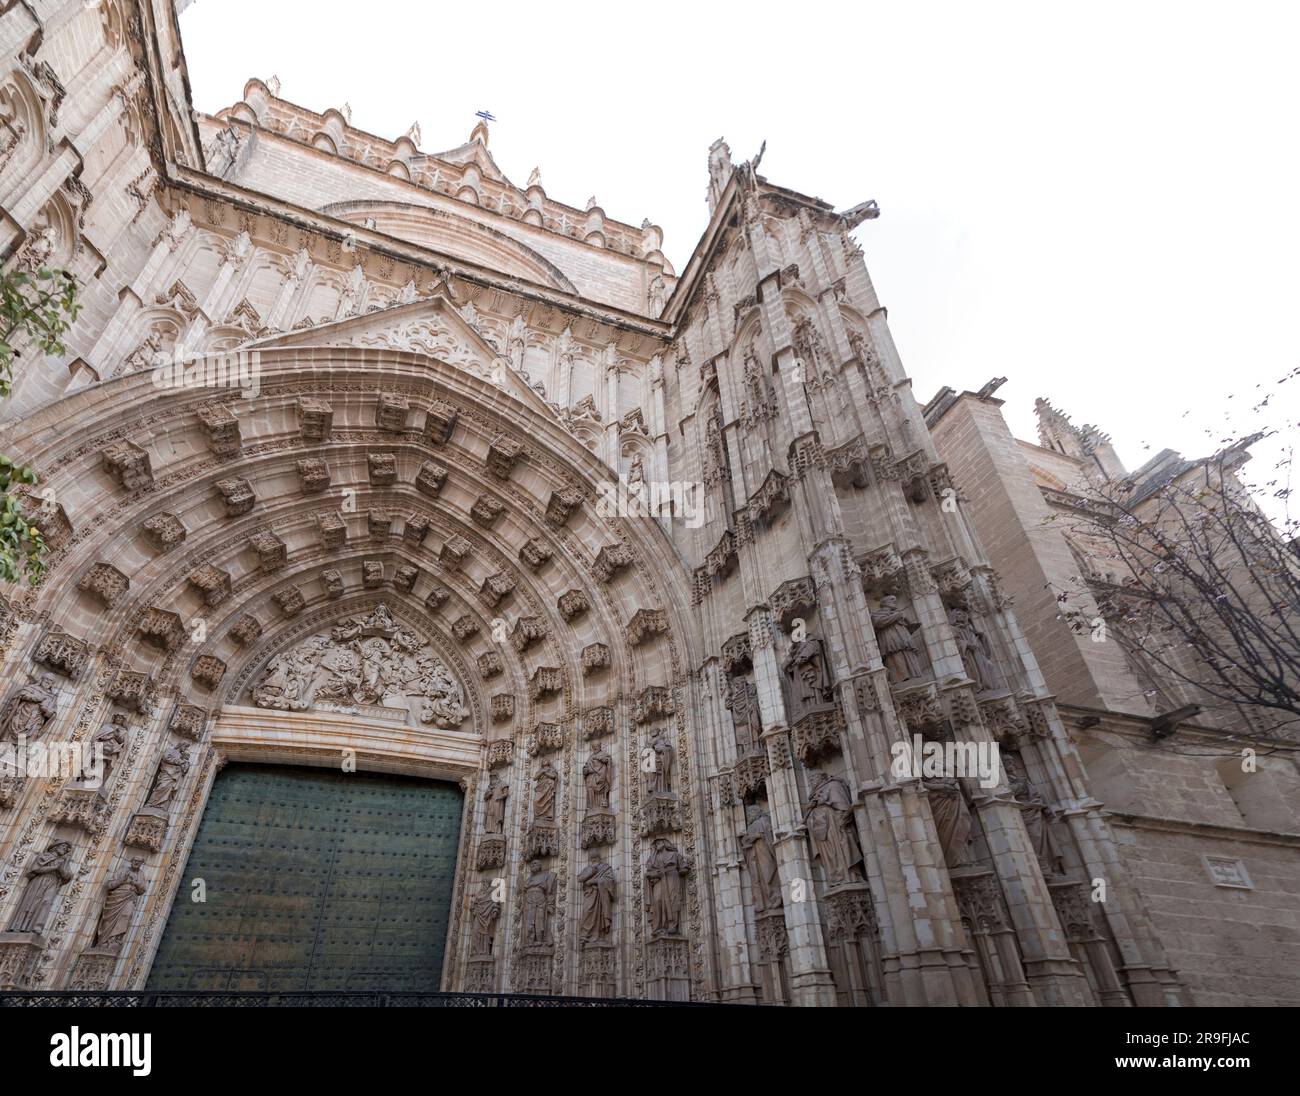 Die Kathedrale der Heiligen Maria des Meeres, die Kathedrale Santa Maria de la Sede oder die Kathedrale von Sevilla ist eine römisch-katholische Kathedrale in Sevilla, Spanien Stockfoto